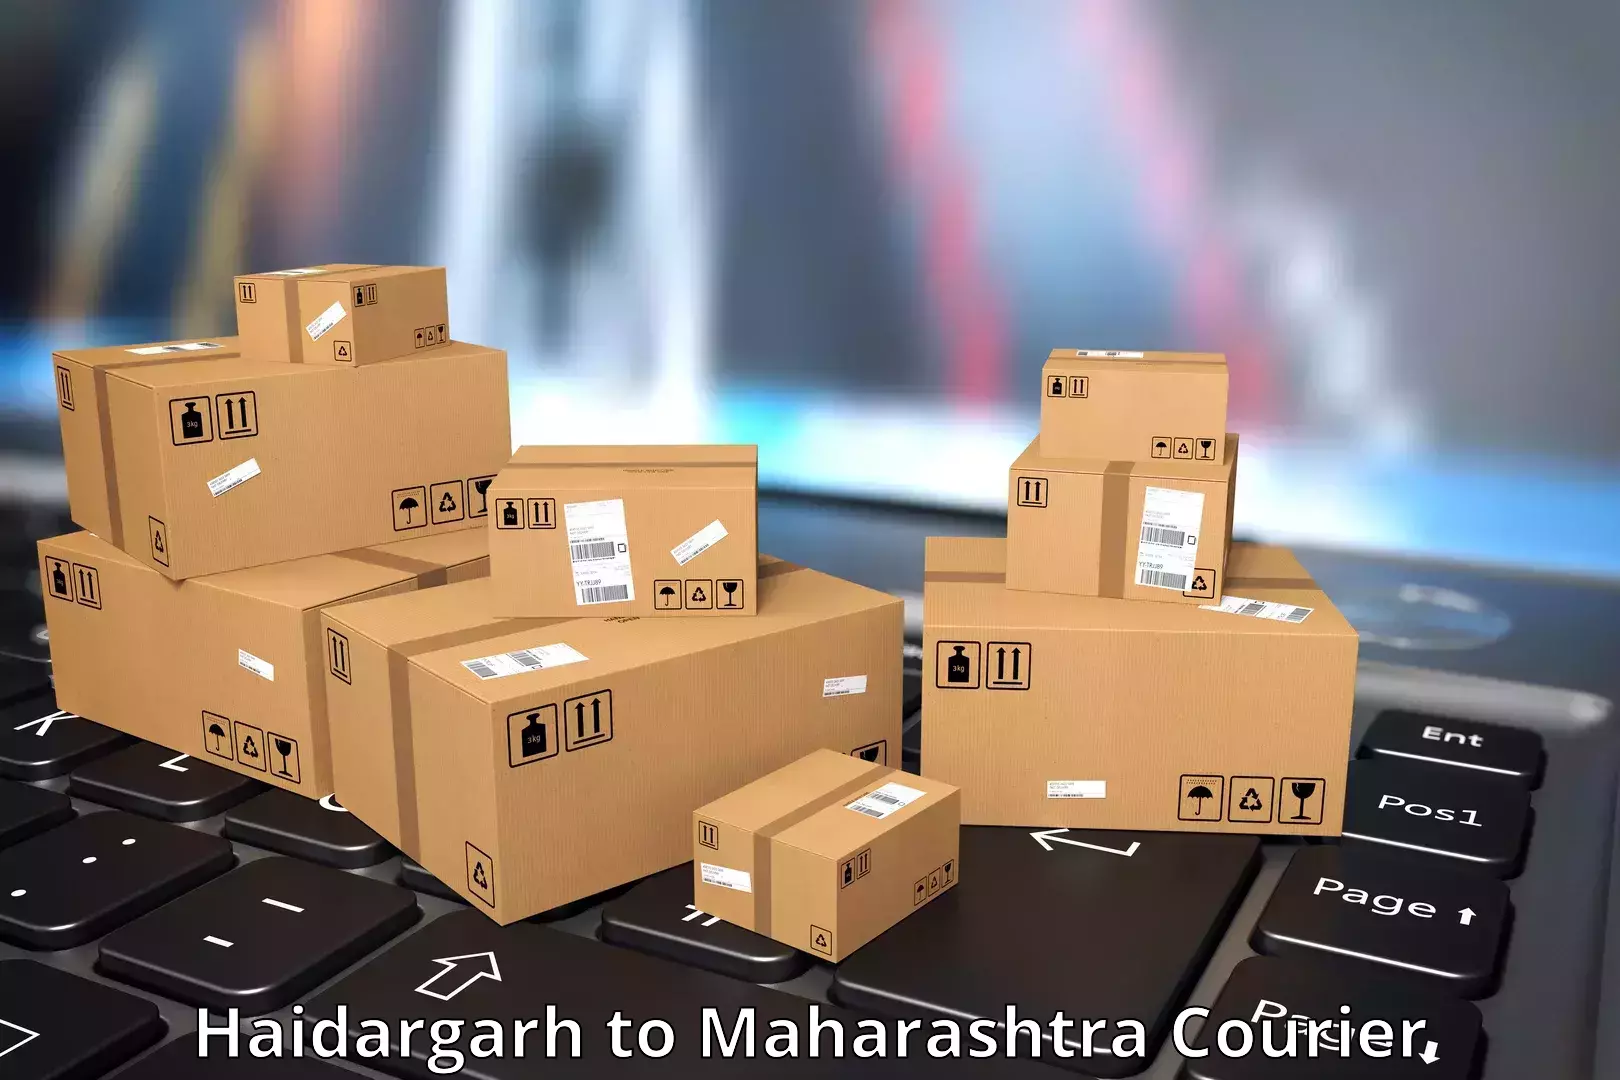 Customer-centric shipping Haidargarh to Dahanu